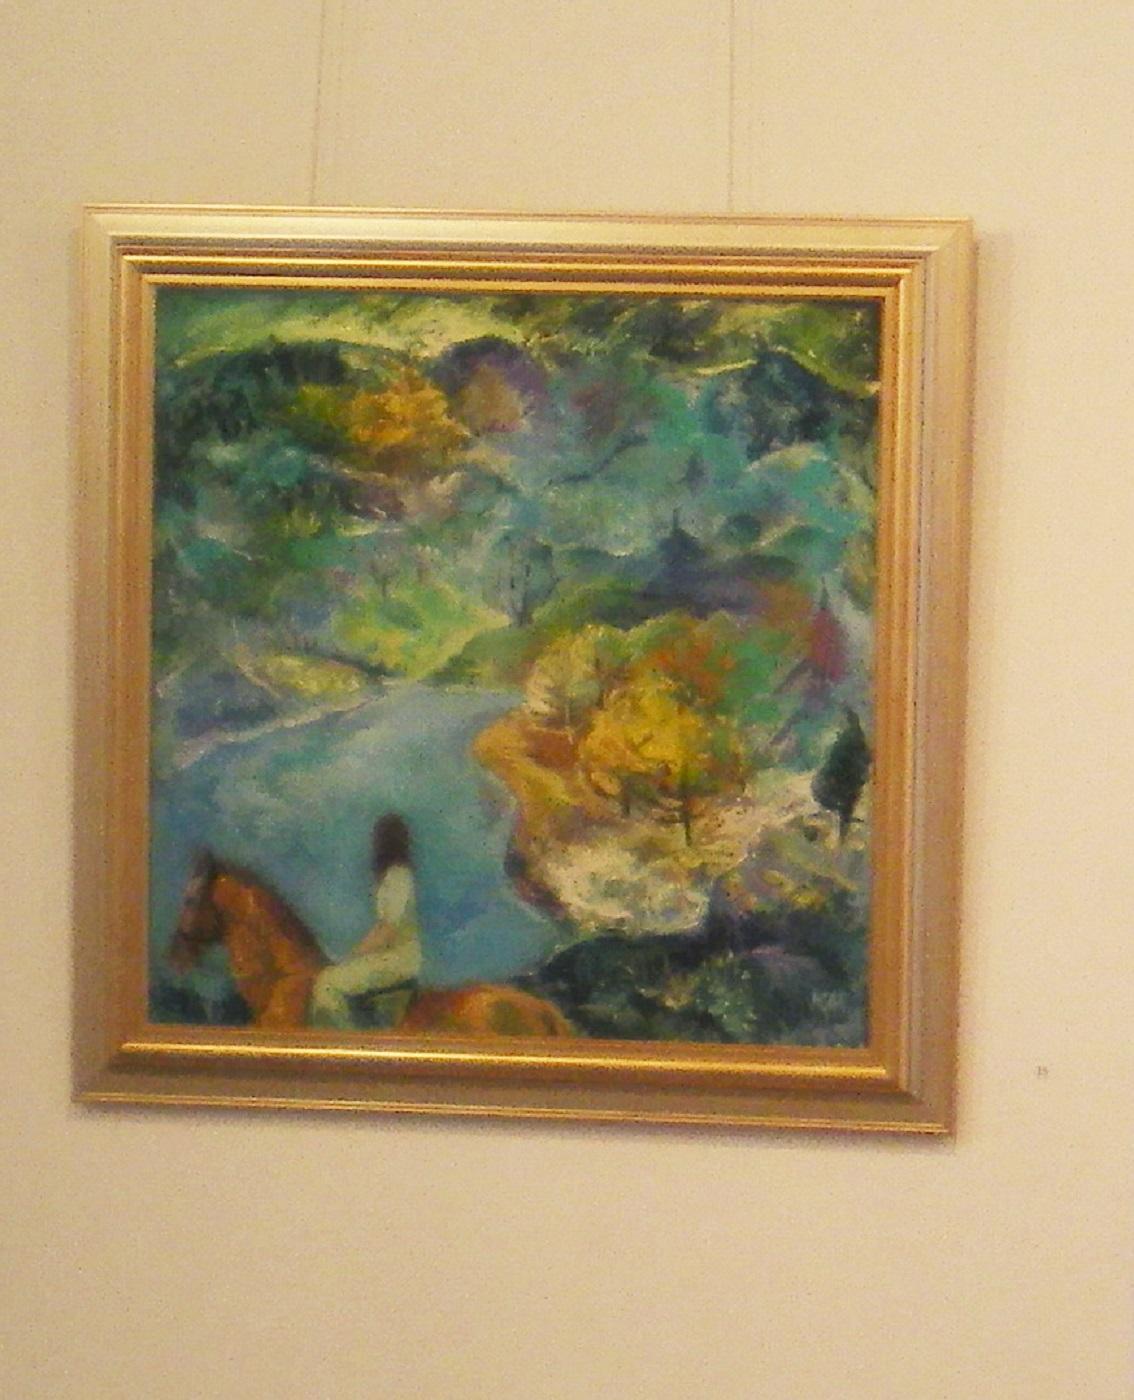 Emotional Presence - Landschaft Ölgemälde Farben Gelb Braun Grün Weiß Blau – Painting von Krasimira Mihailova